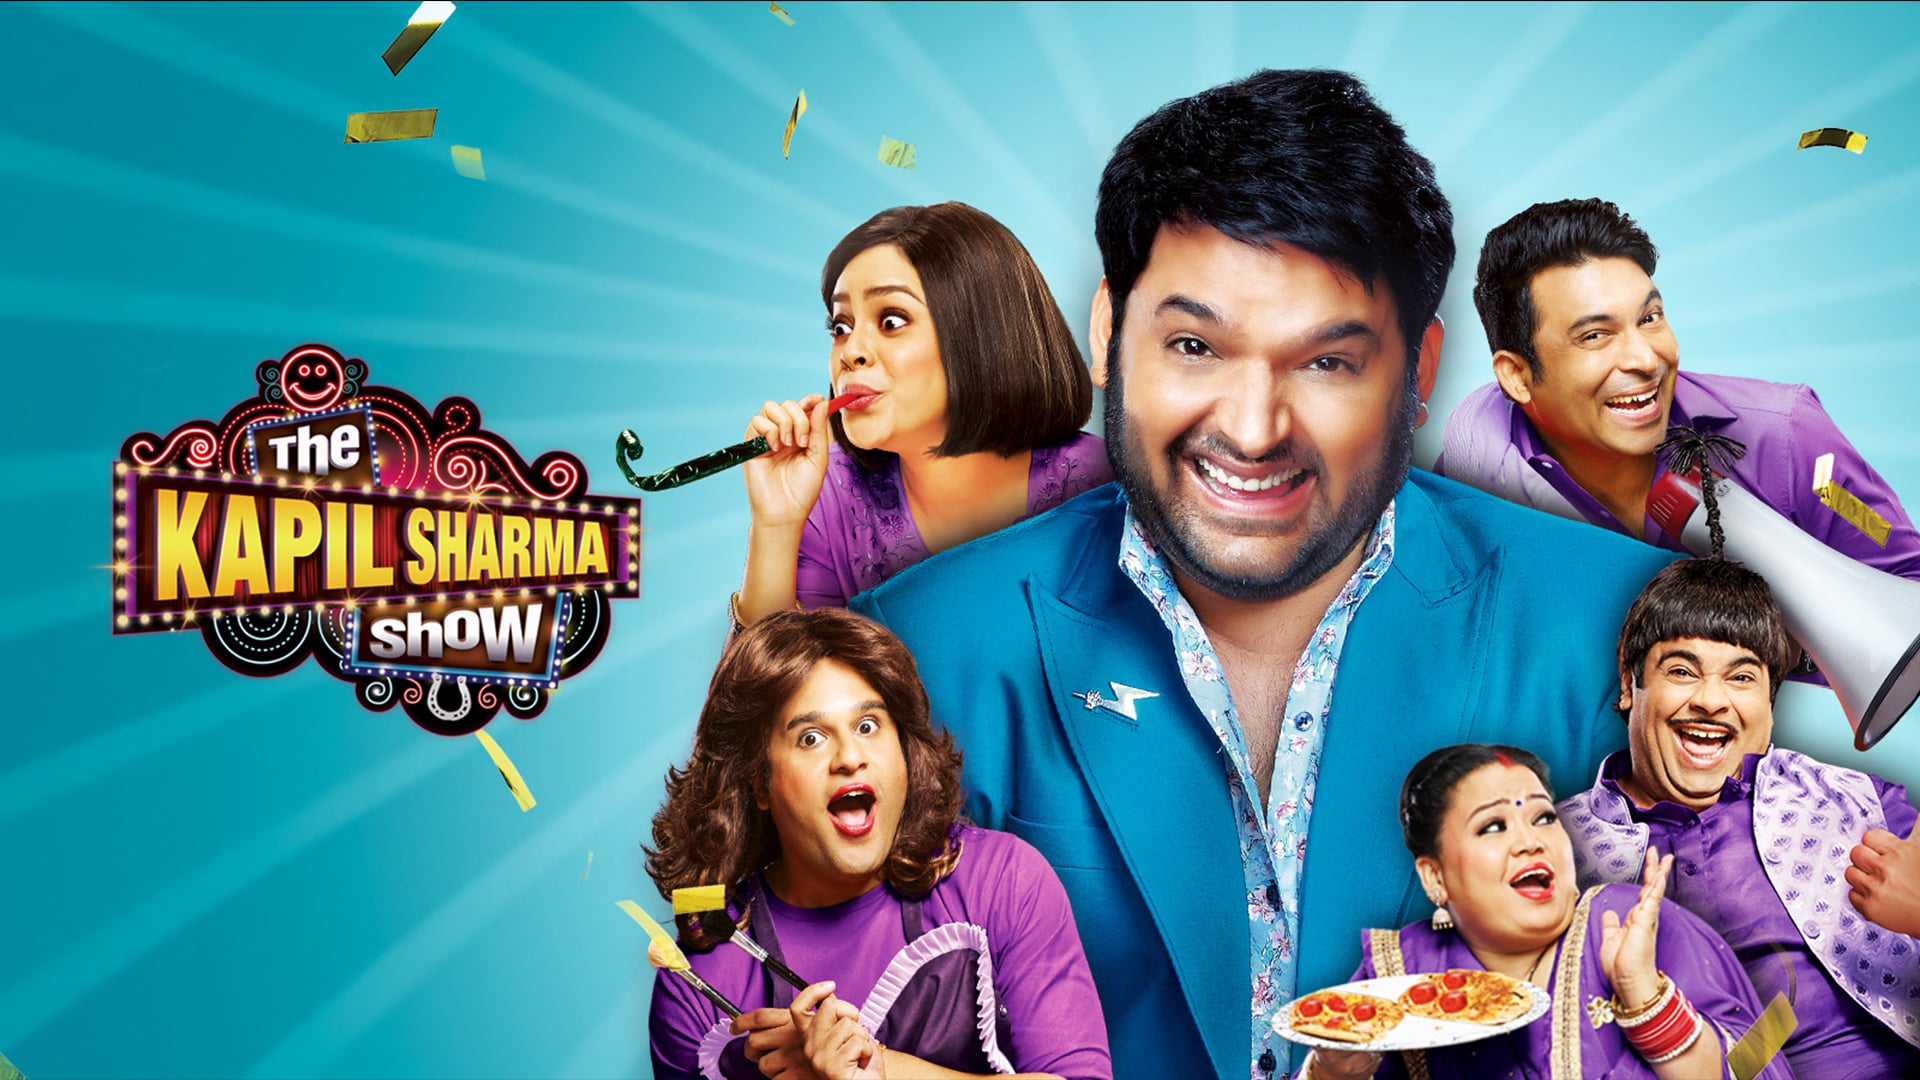 The Kapil Sharma Show - Season 2 Episode 61 : The Cast Of Jabariya Jodi